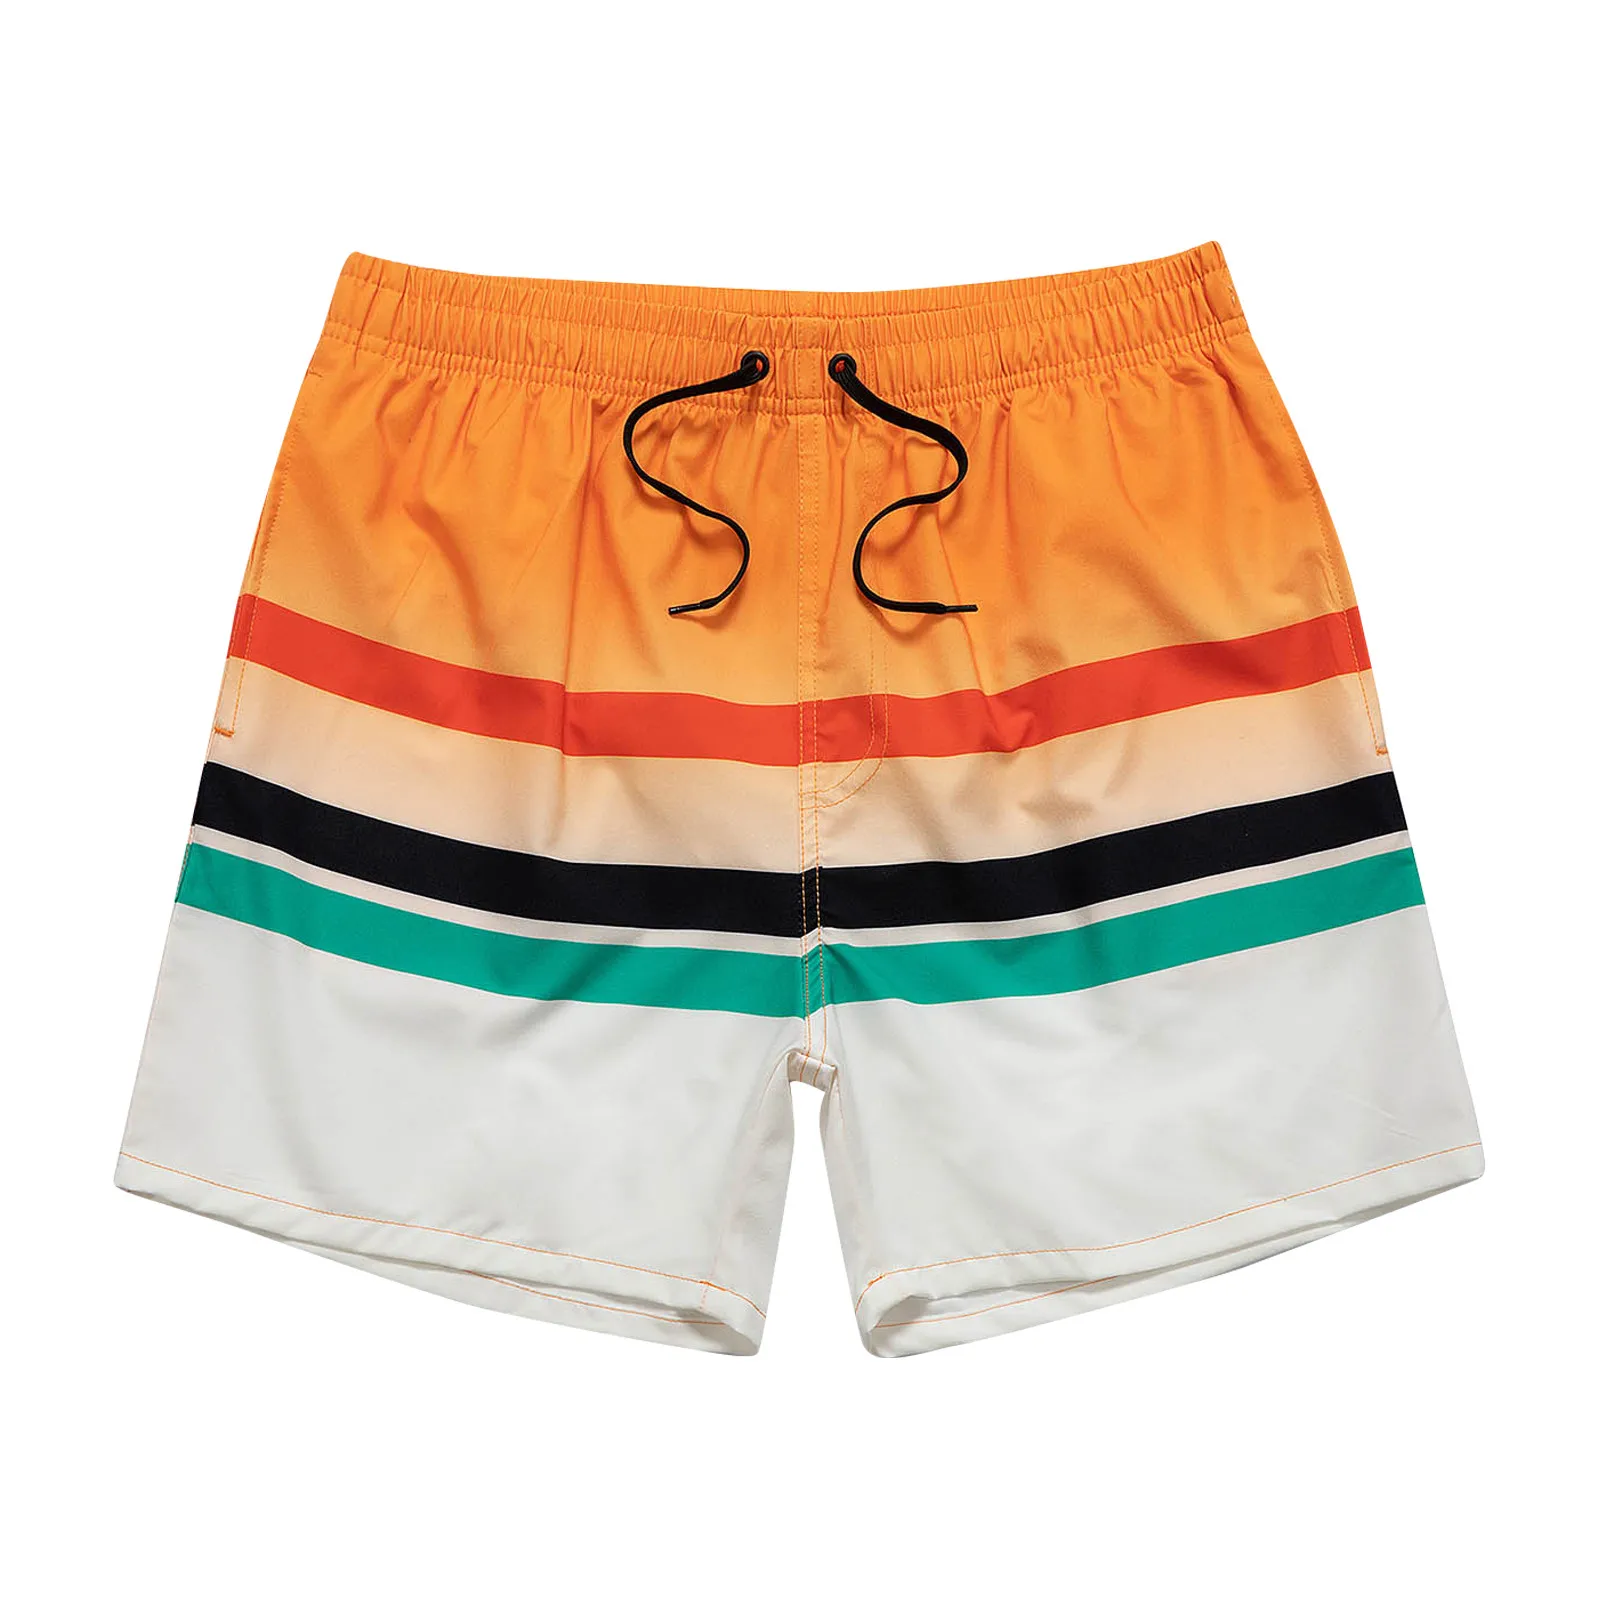 

Мужские пляжные шорты для отпуска, быстросохнущие пляжные шорты с сетчатой подкладкой, новые красивые плавки, одежда для плавания, пляжная ...